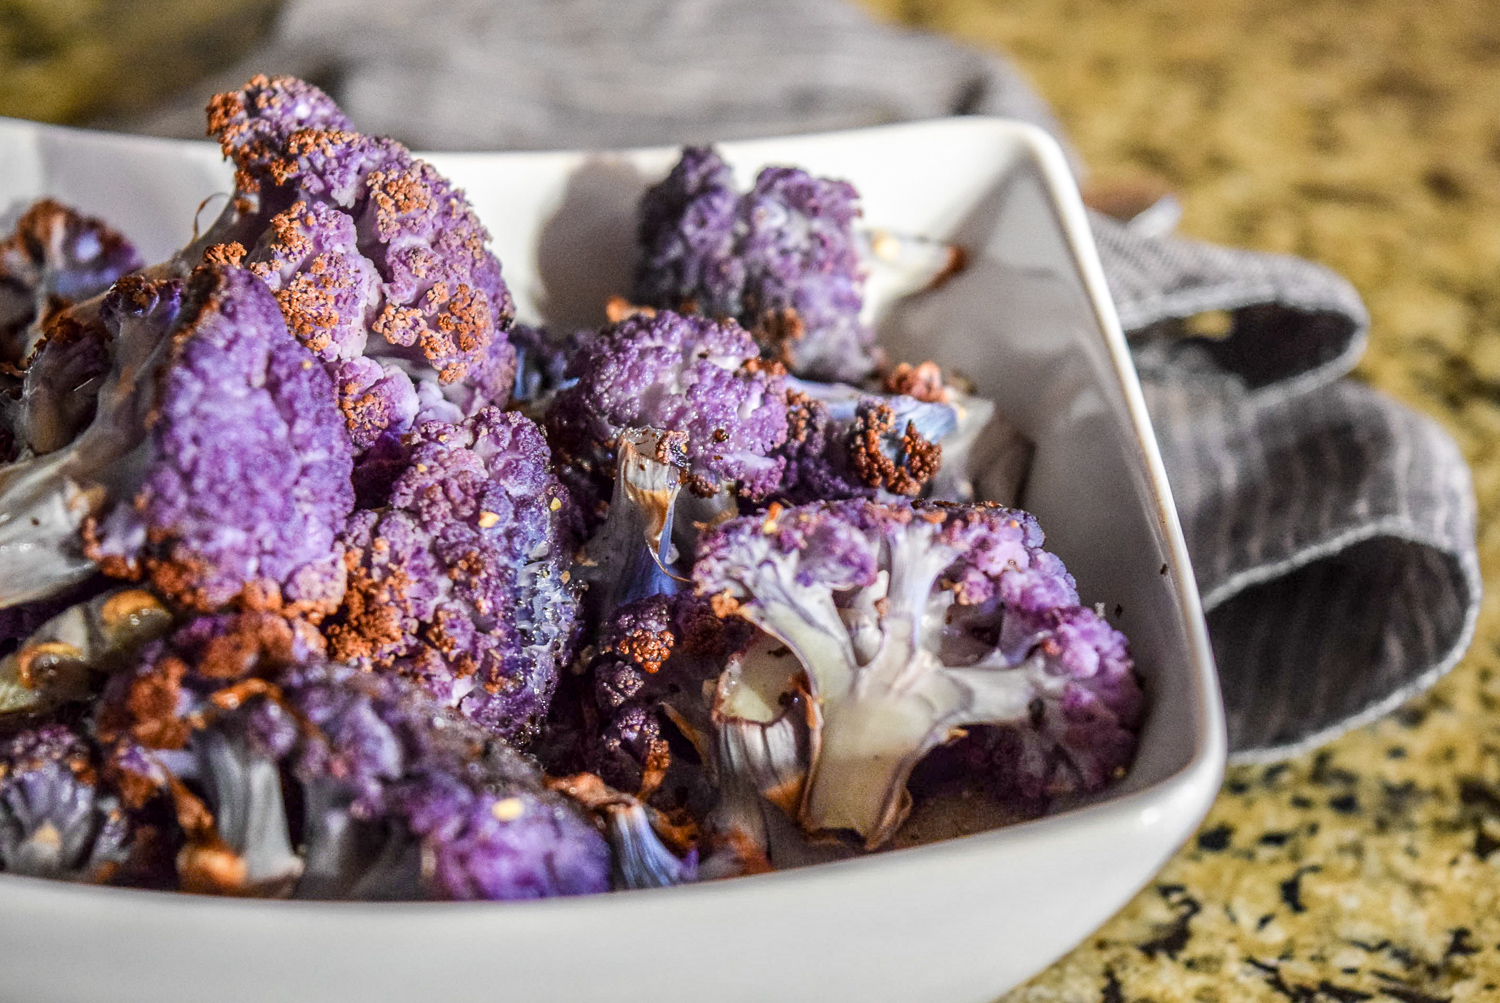 Finished roasted purple cauliflower florets up close